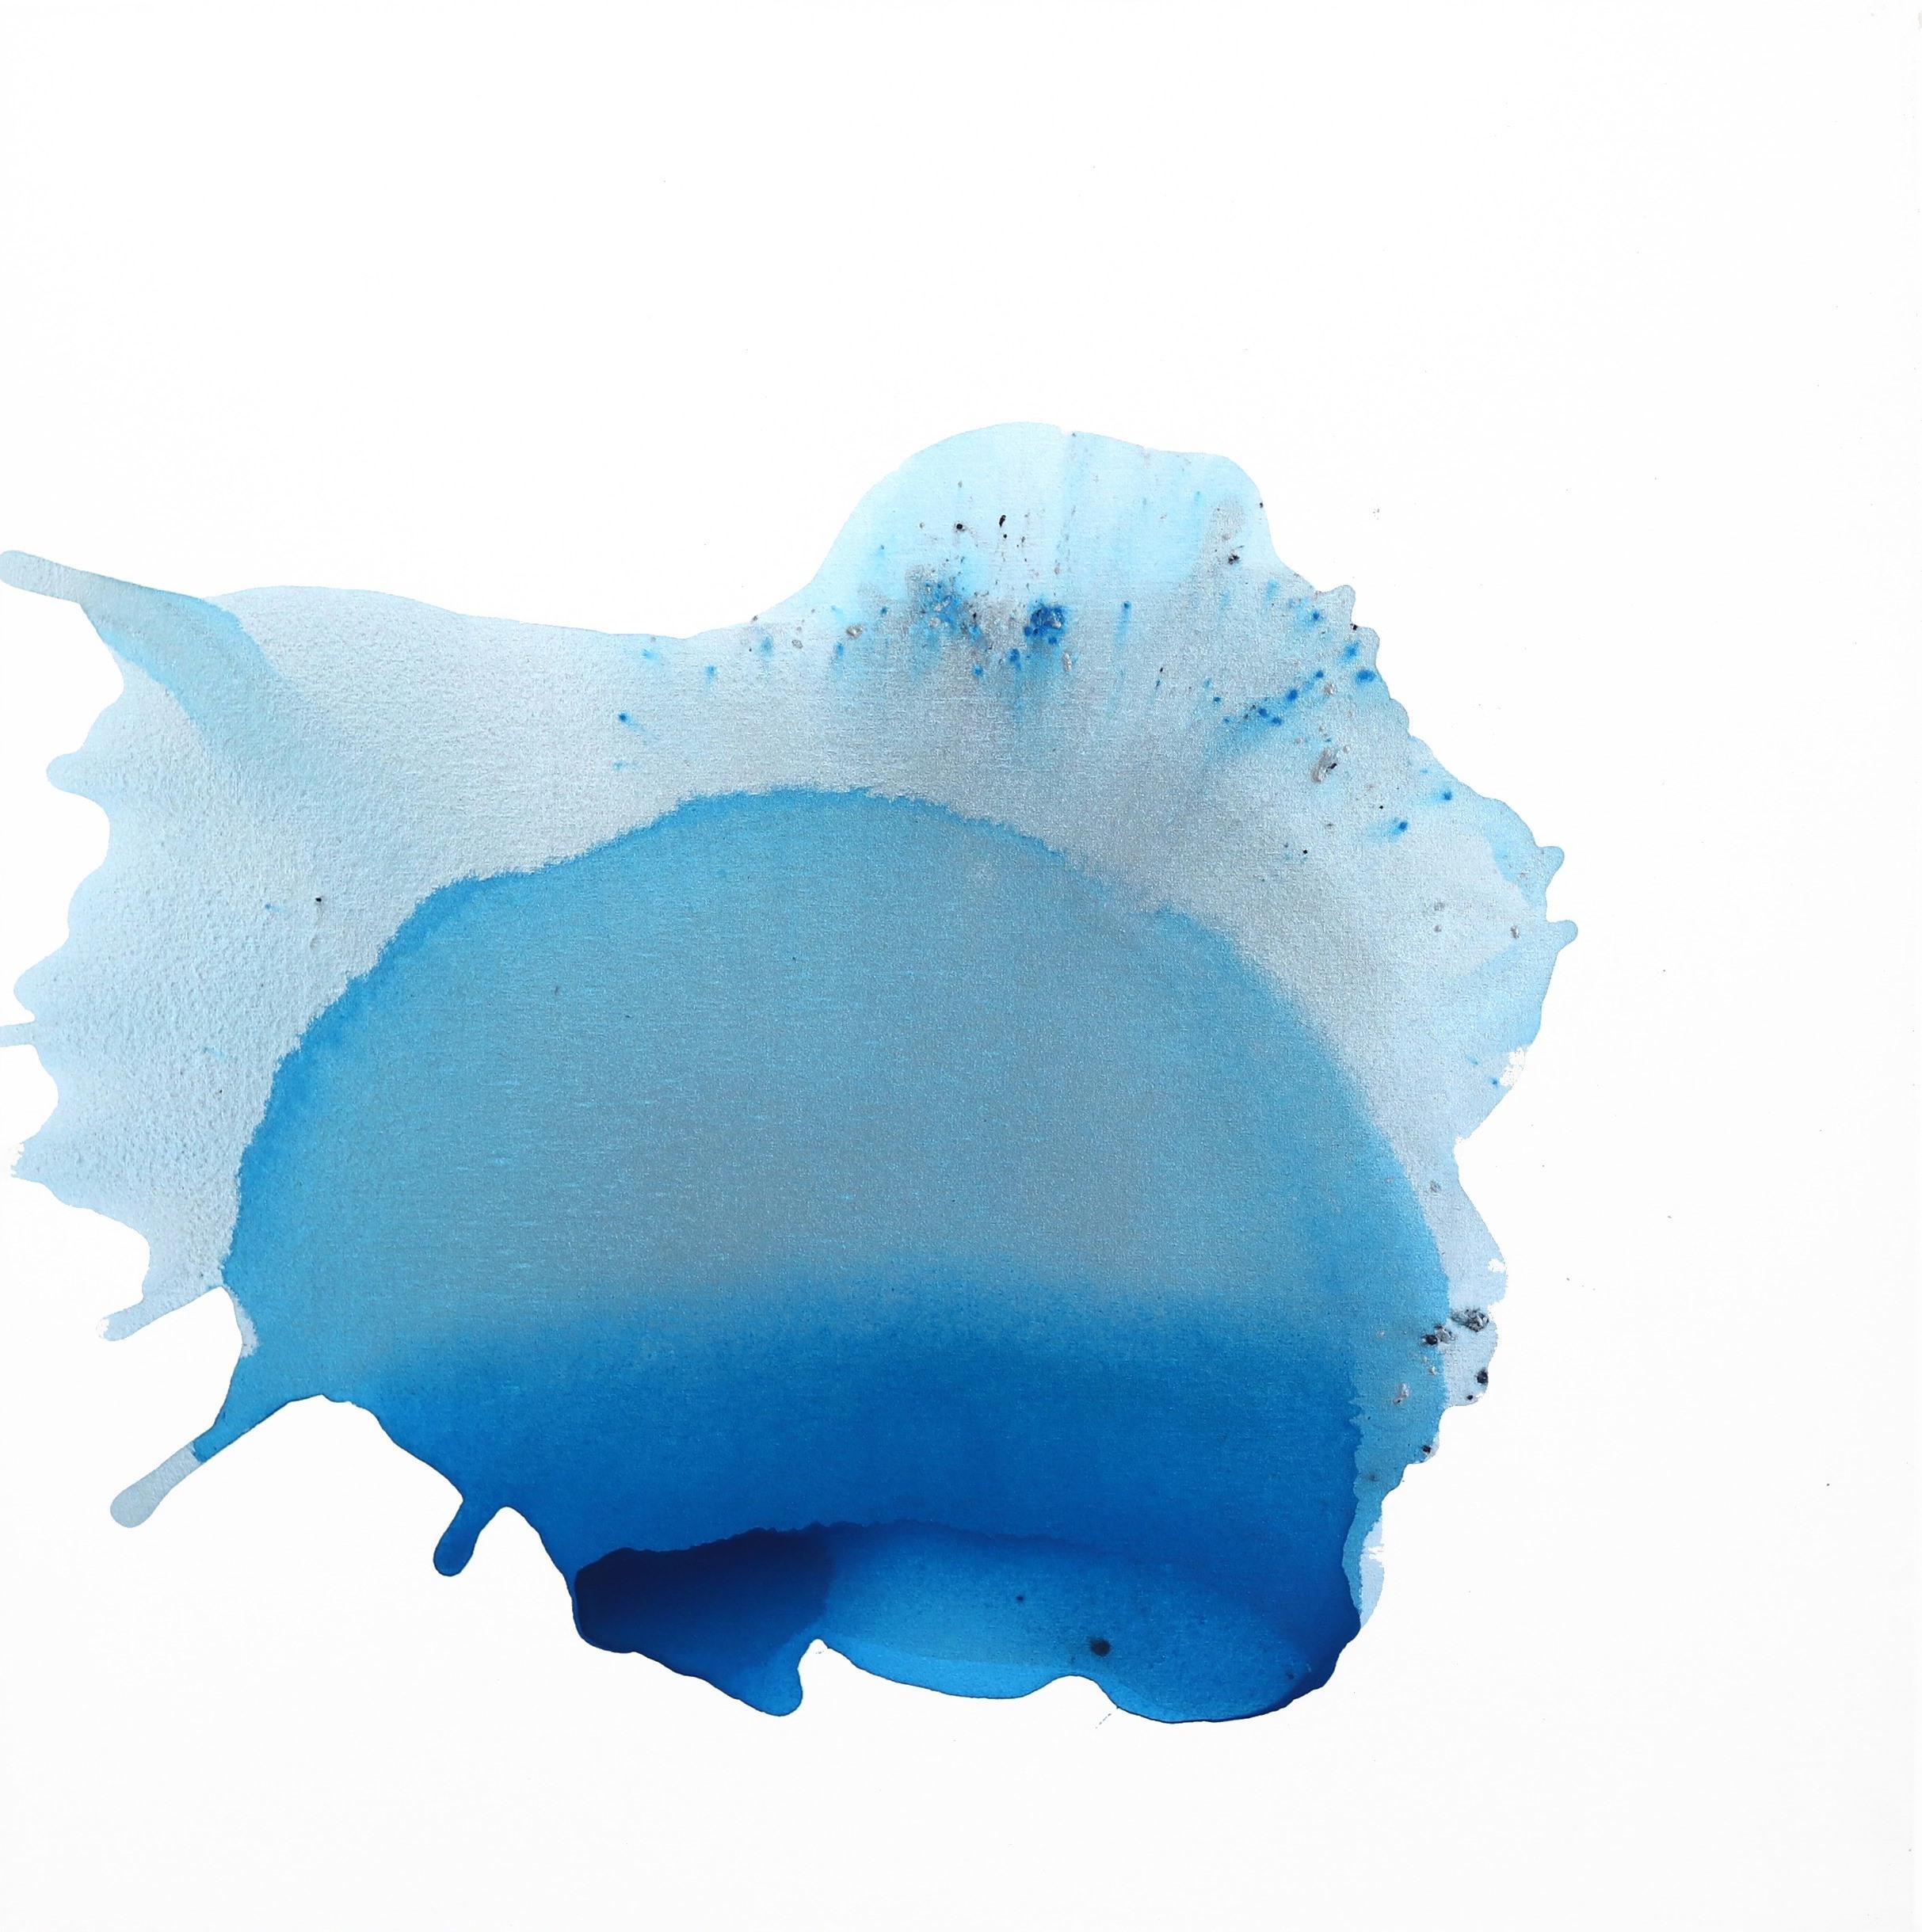 Salo Blau - Großes Original minimalistisches Aquarellgemälde auf Leinwand mit ruhigem Gemälde